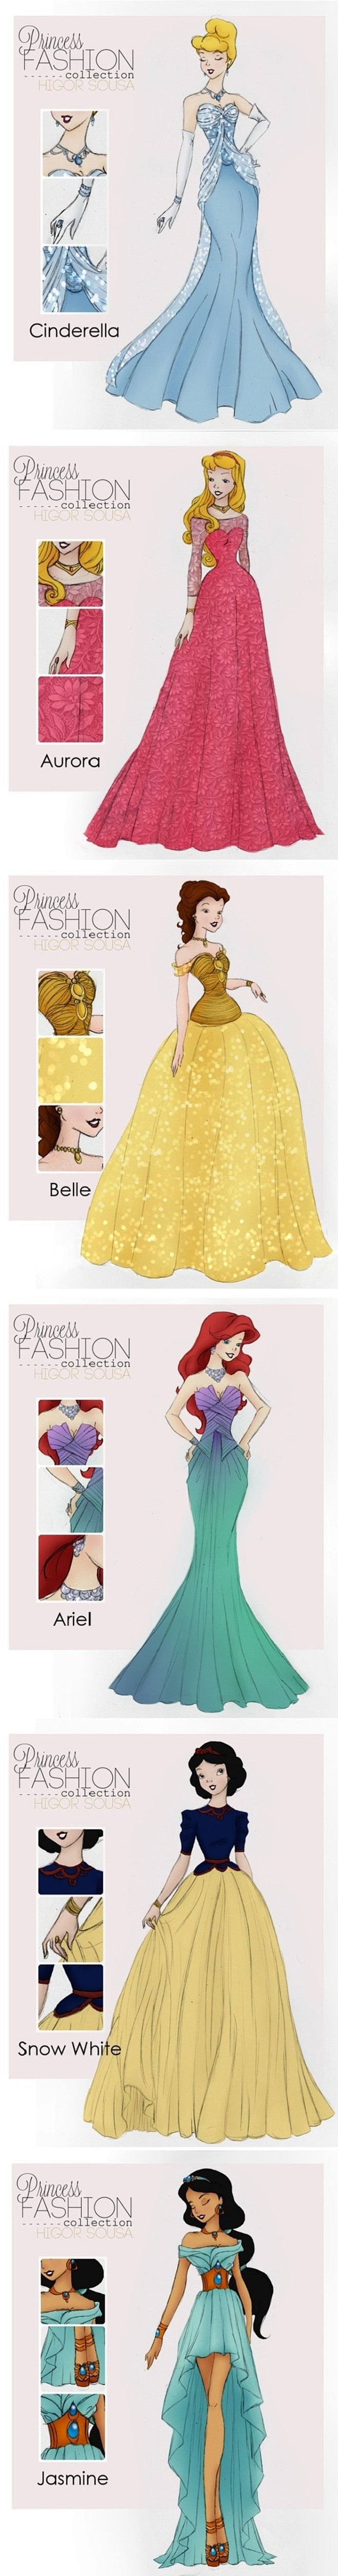 超美的公主们的服装设计图纸。。。仙度瑞拉...